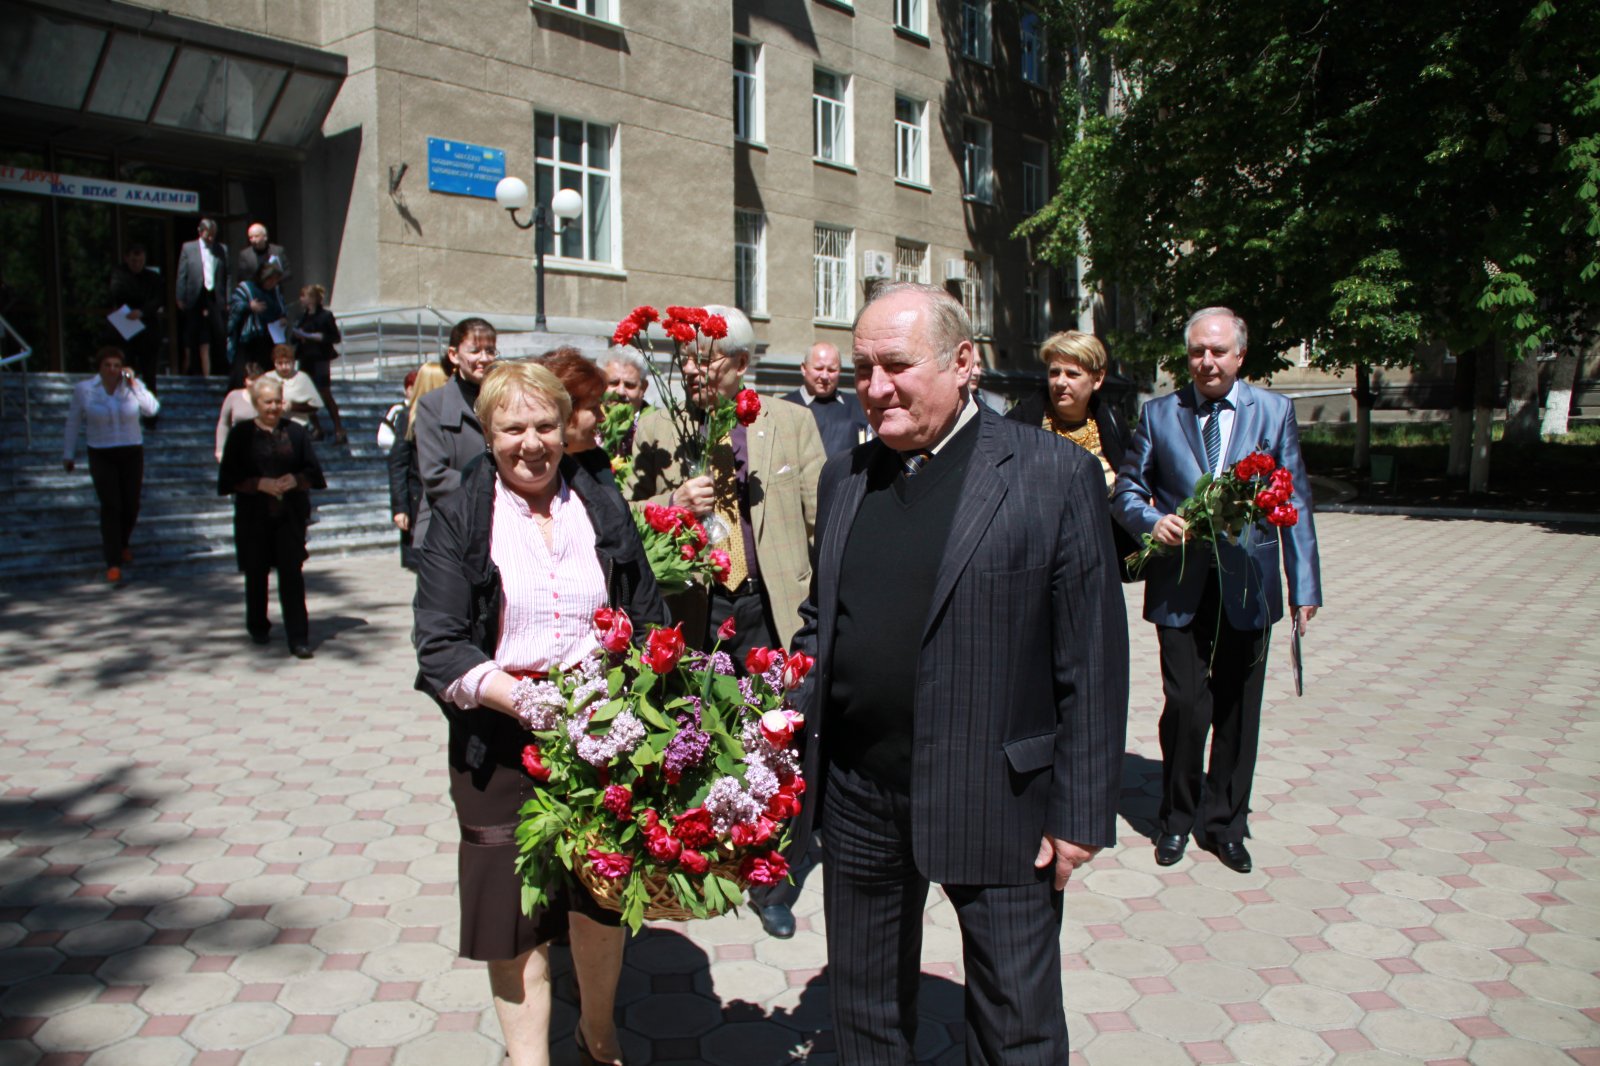 Изображение 8 мая состоялось торжественное   возложение цветов  в честь Дня Великой Победы   2014